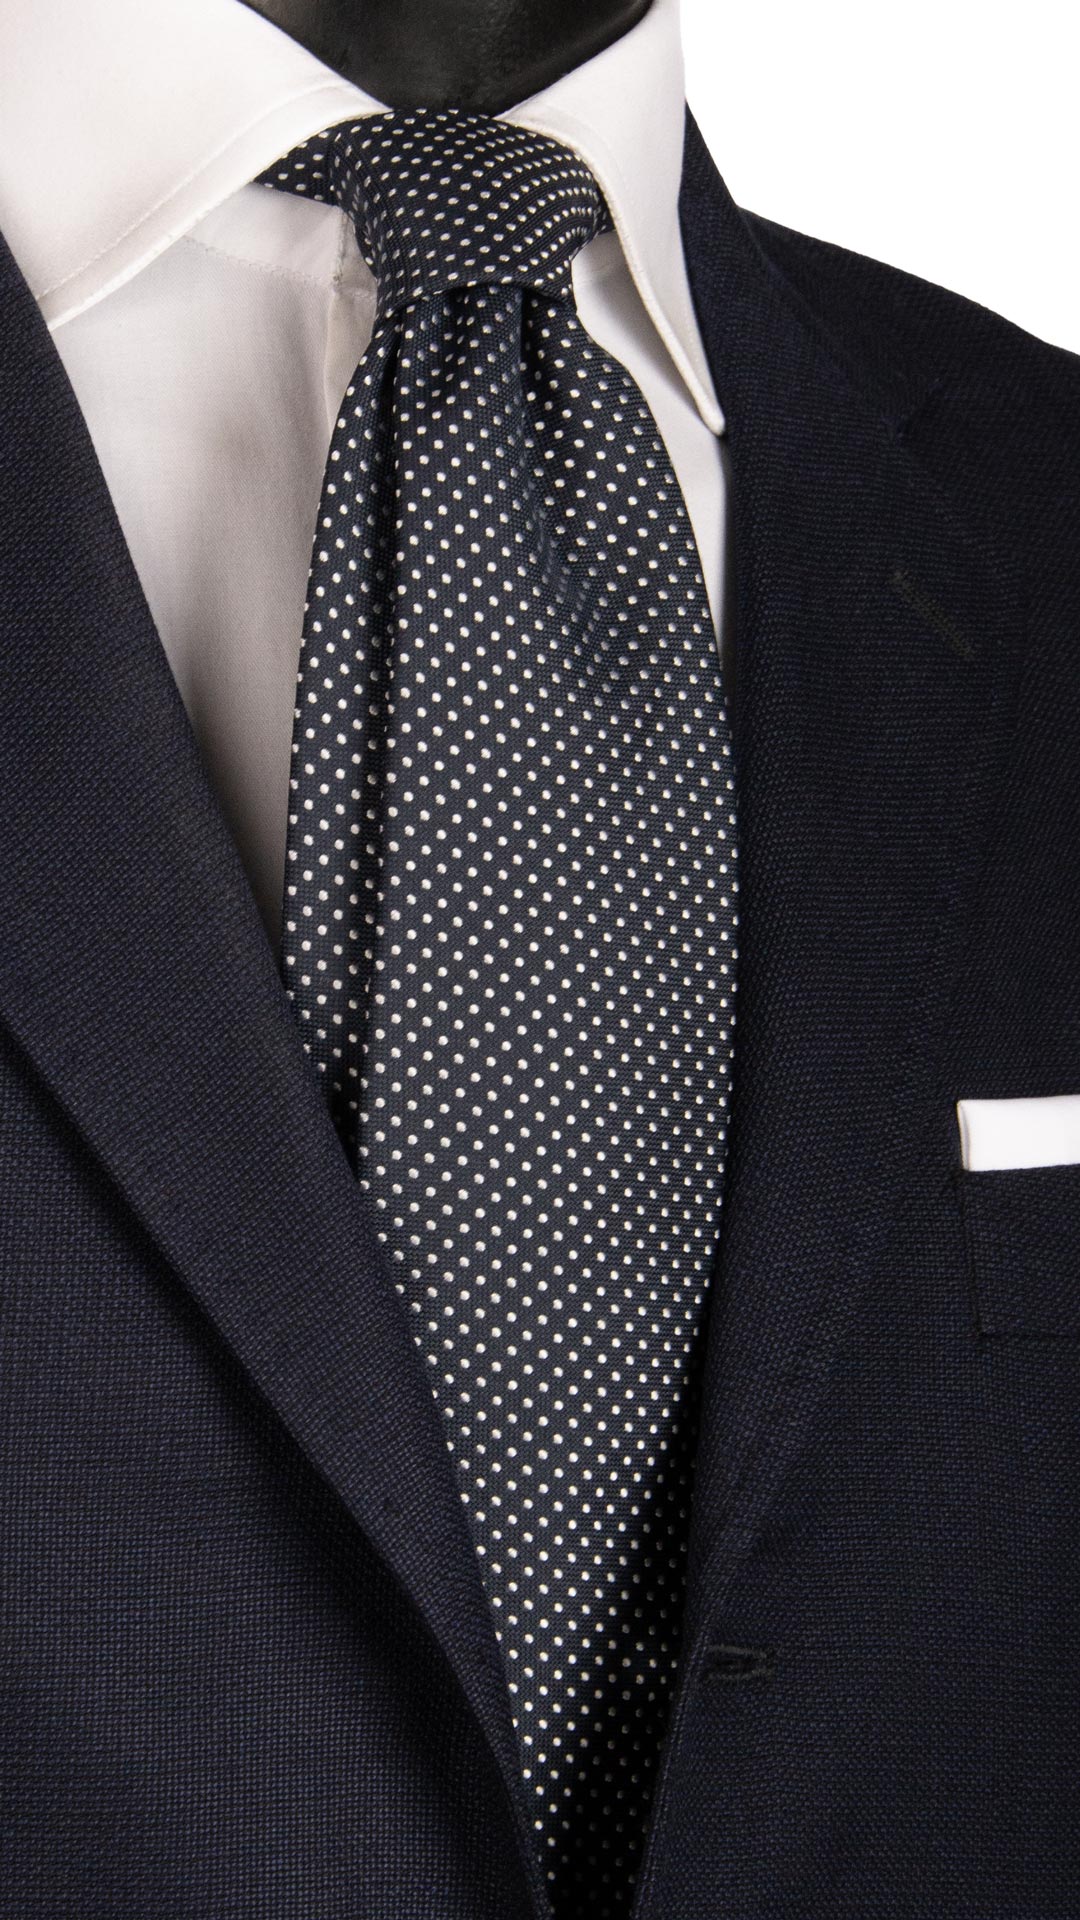 Cravatta da Cerimonia di Seta Blu a Pois Grigio Argento CY6656 Made in Italy Graffeo Cravatte